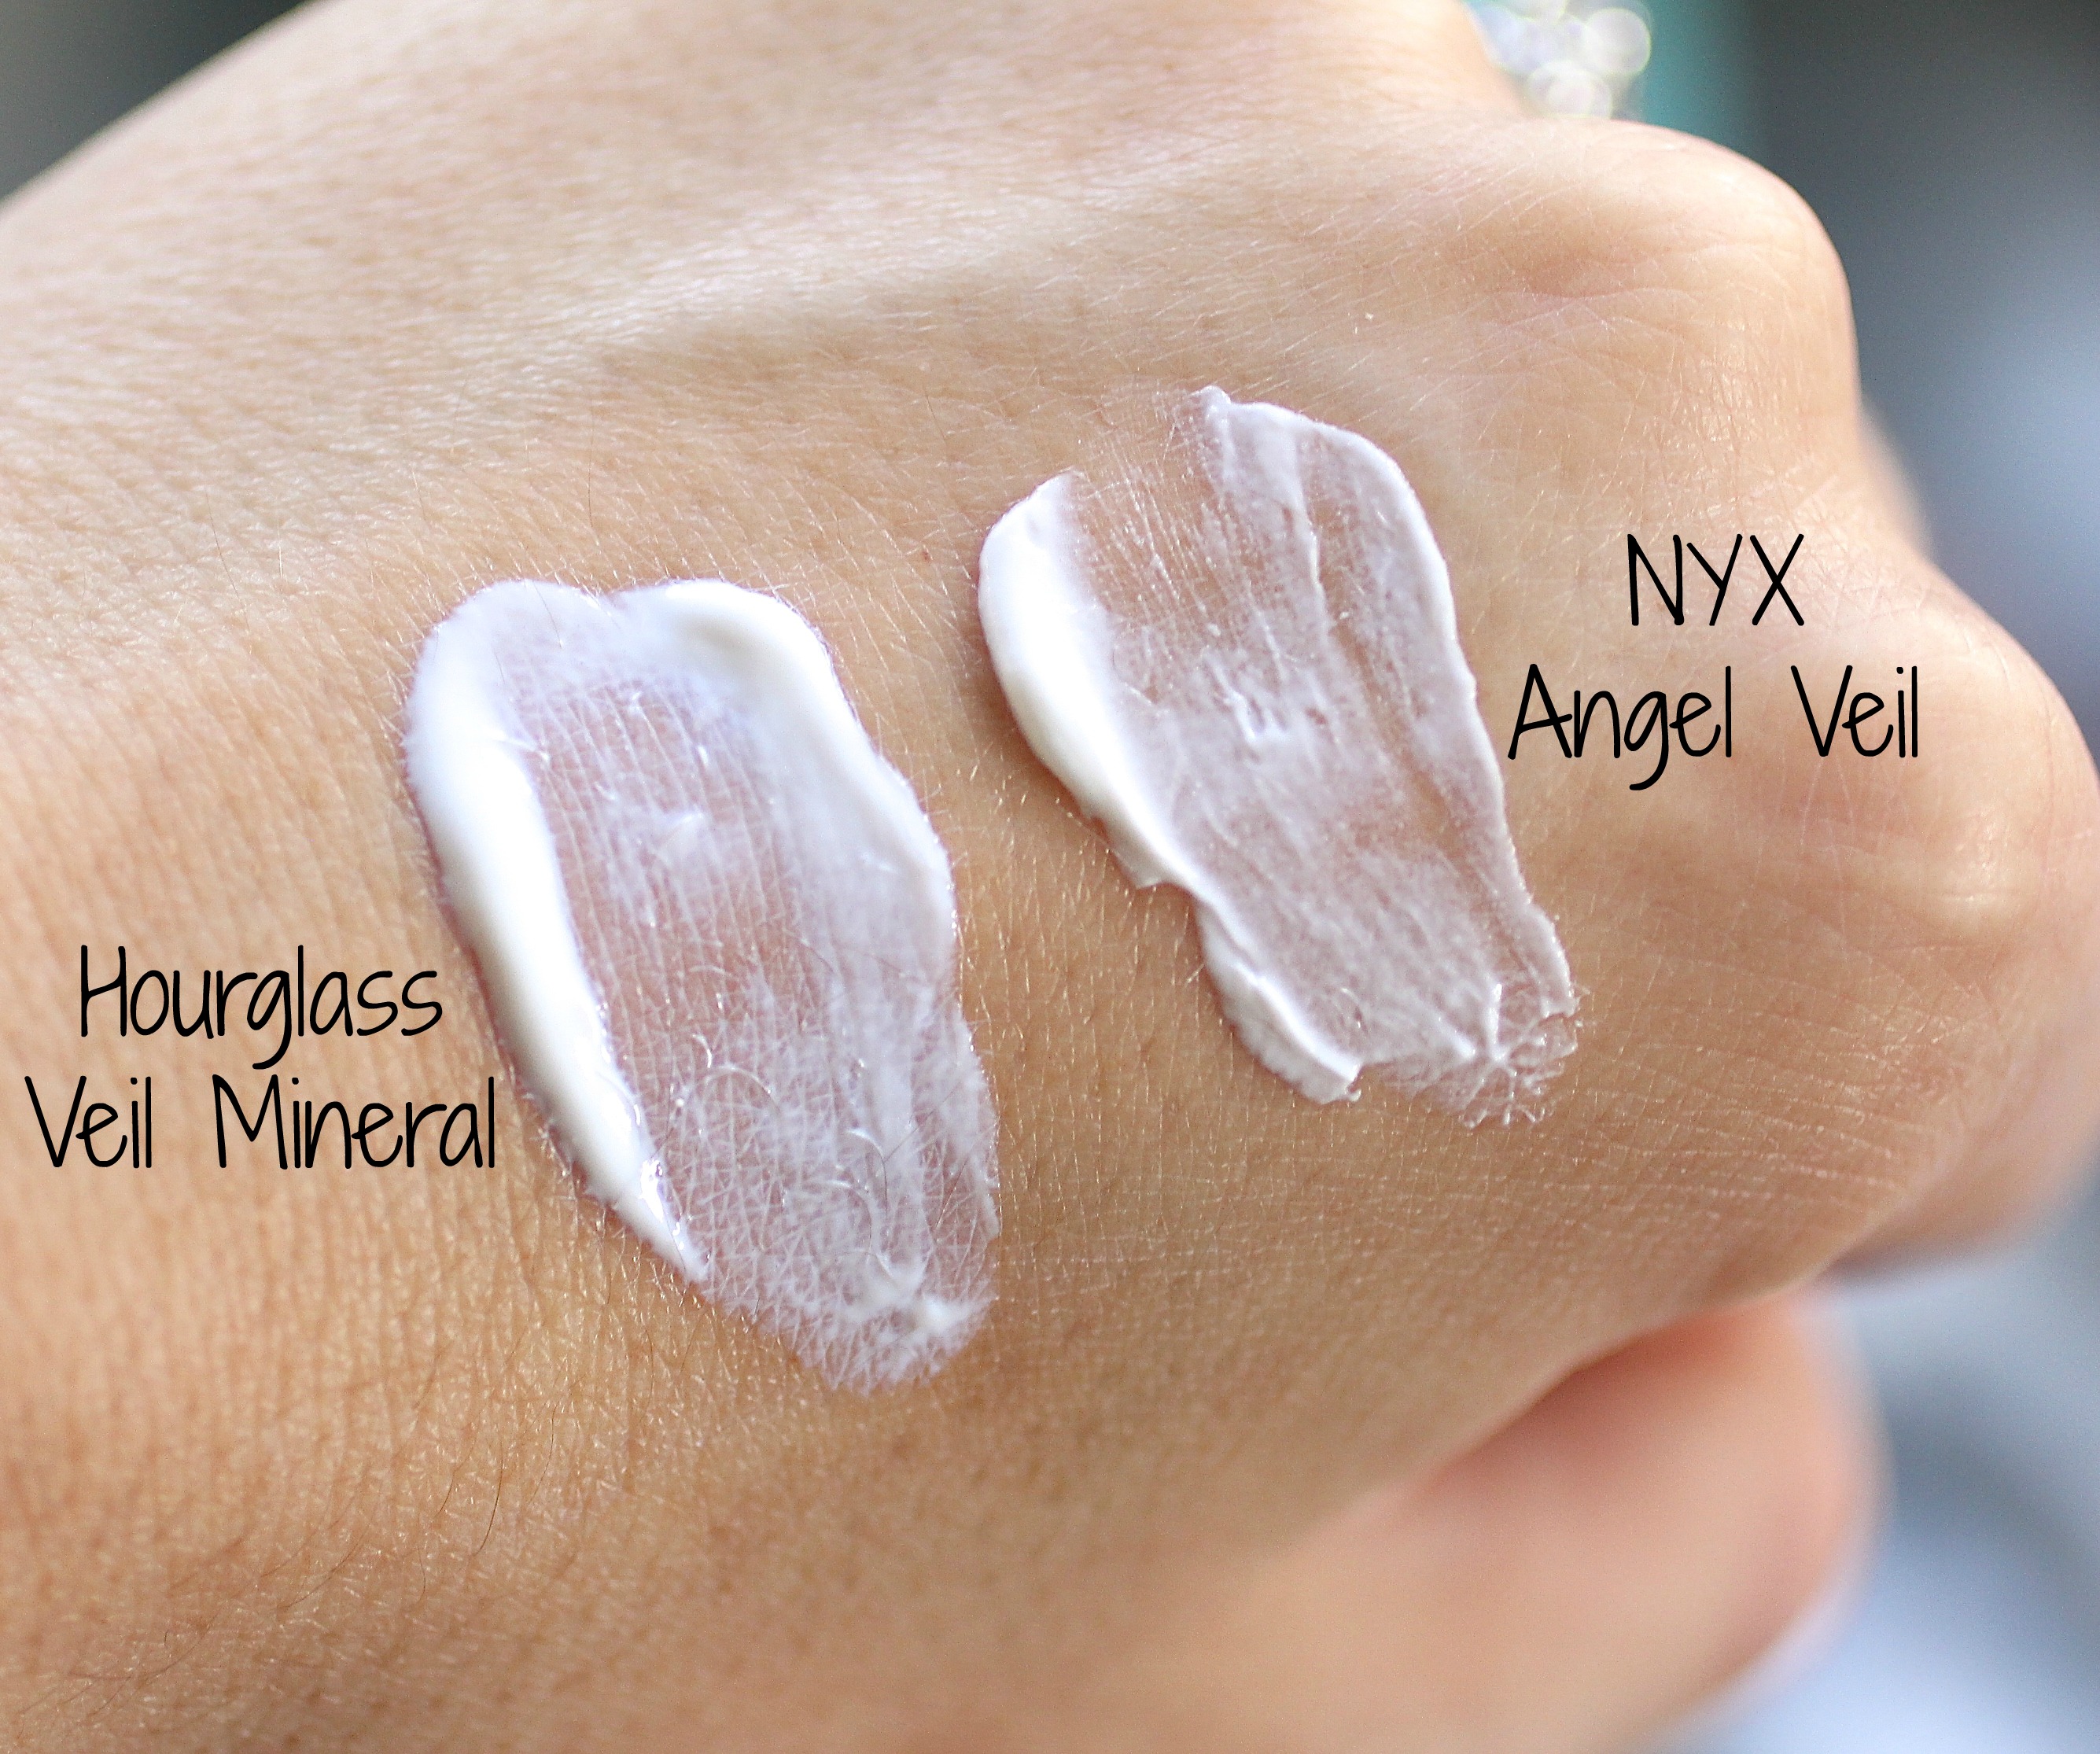 Kem lót trang điểm NYX Angel Veil Primer có thể hoàn thiện tốt nhất cả 4 chức năng trên chỉ trong một lớp kem lót màu trắng, mỏng, nhẹ